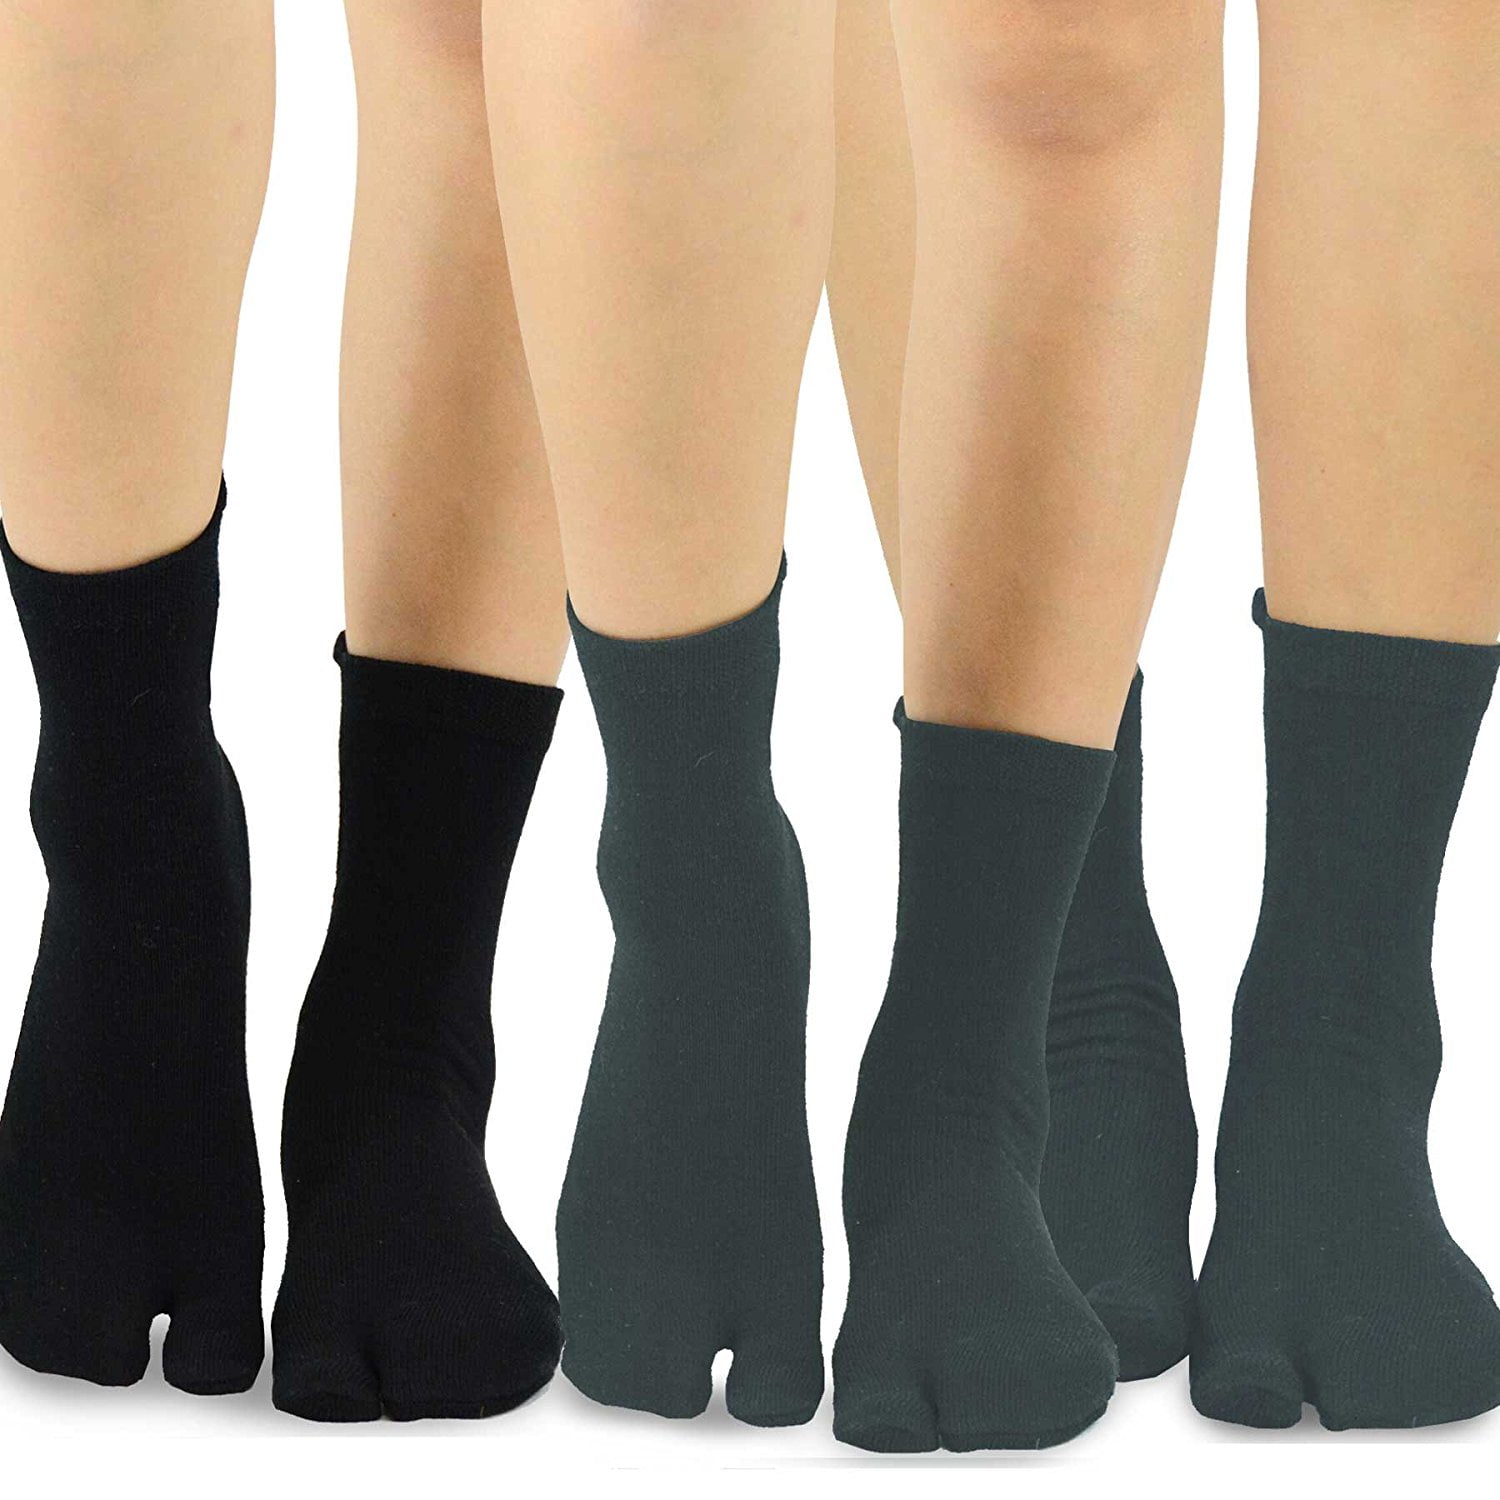 TeeHee Flip Flop Big Toe Cotton Socks 3-Pairs Pack (Black/Charcoal ...